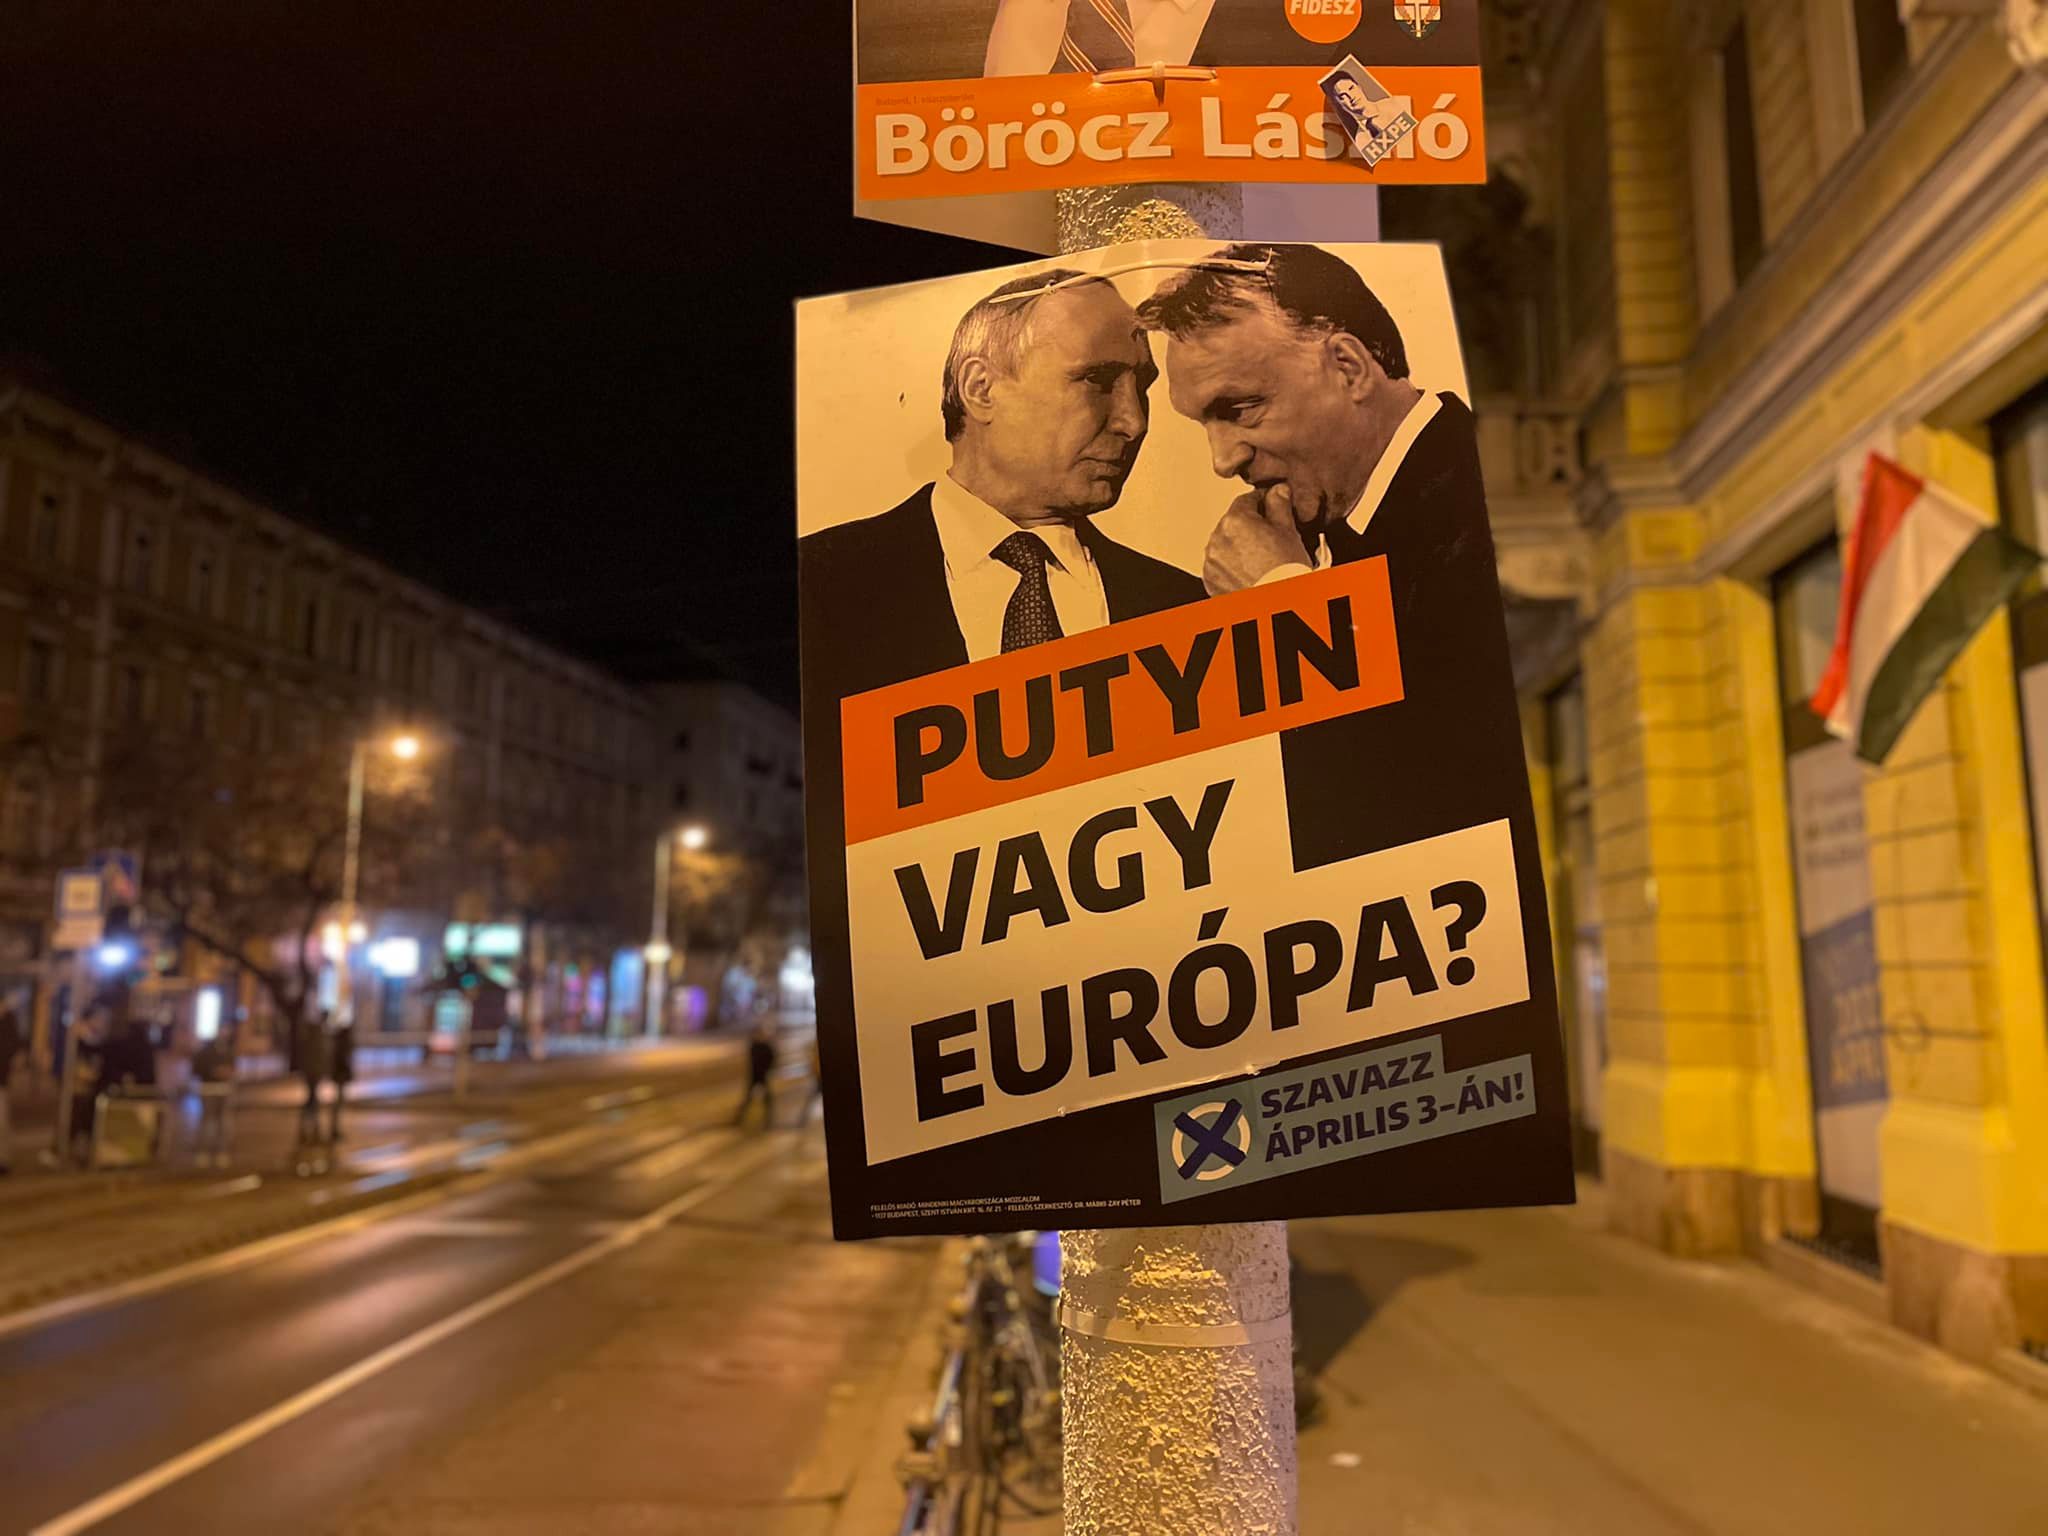 Túl késő és túl kevés, a Putyin vs Európa-kampányra már „összeháborúzta” a Fidesz az ellenzéket. Ráadásul vidéken alig lehetett találkozni ezekkel a plakátokkal.